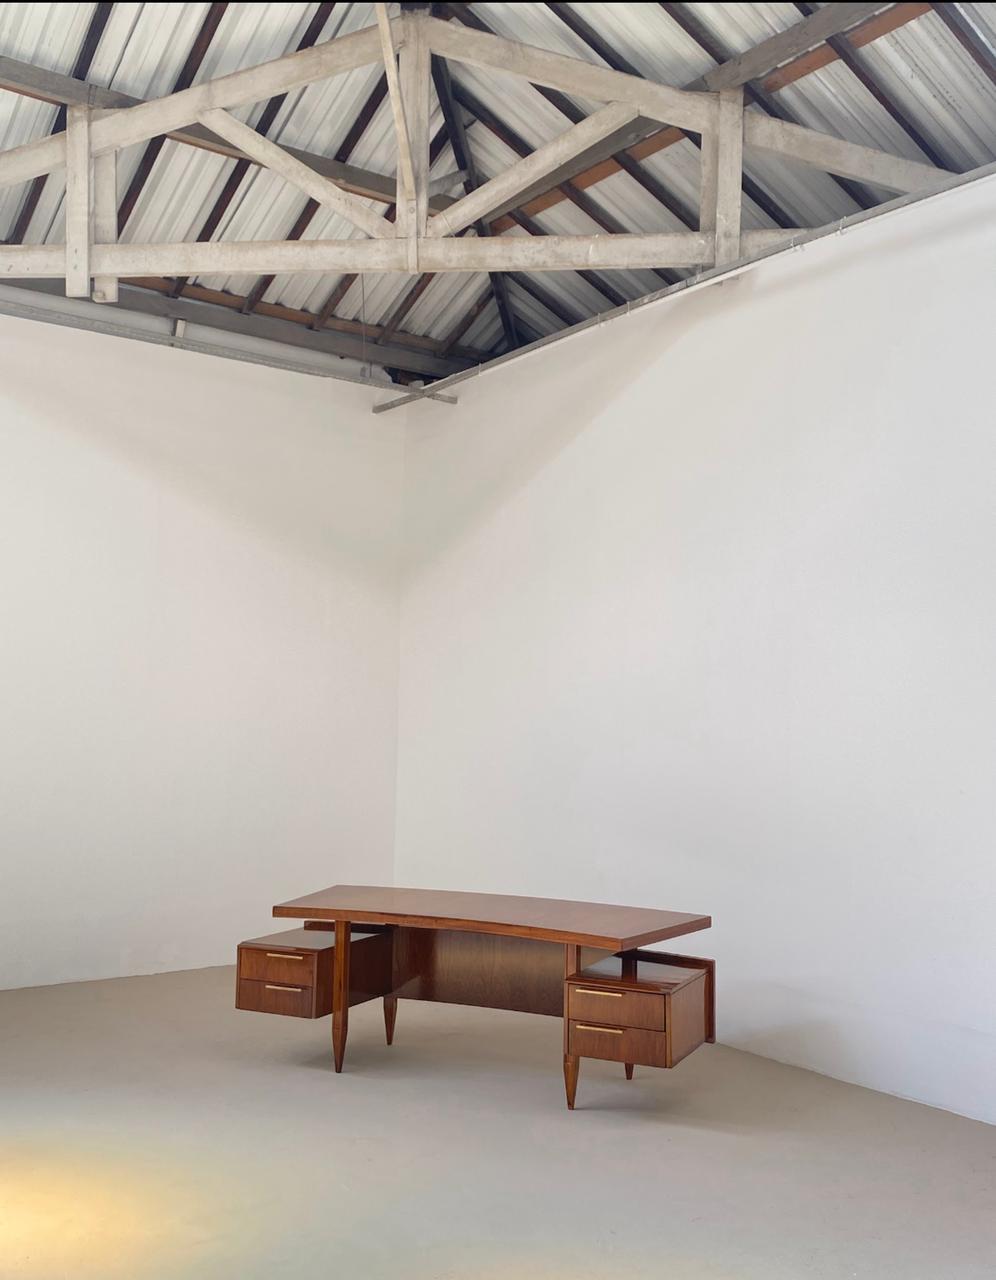 Galeria VERNIZ inaugura novo endereço em galpão de 730 m² na Barra Funda